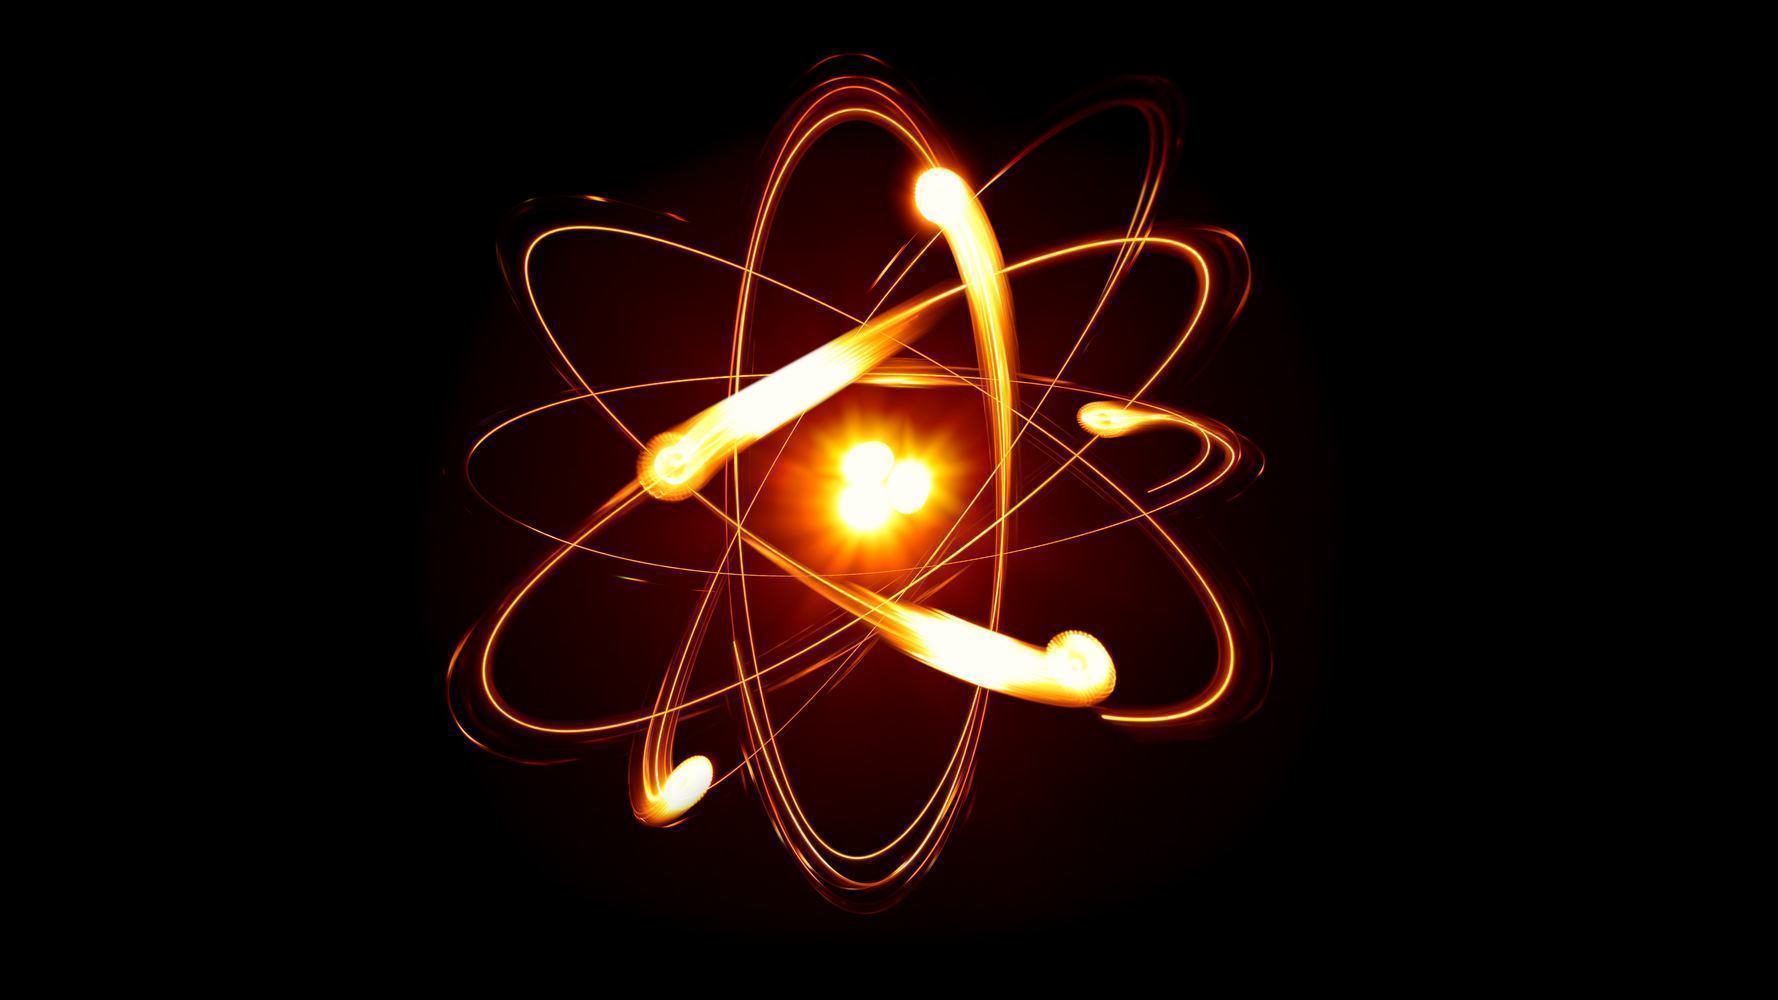 Fusão Nuclear, o que é? Definição, características e principais vantagens